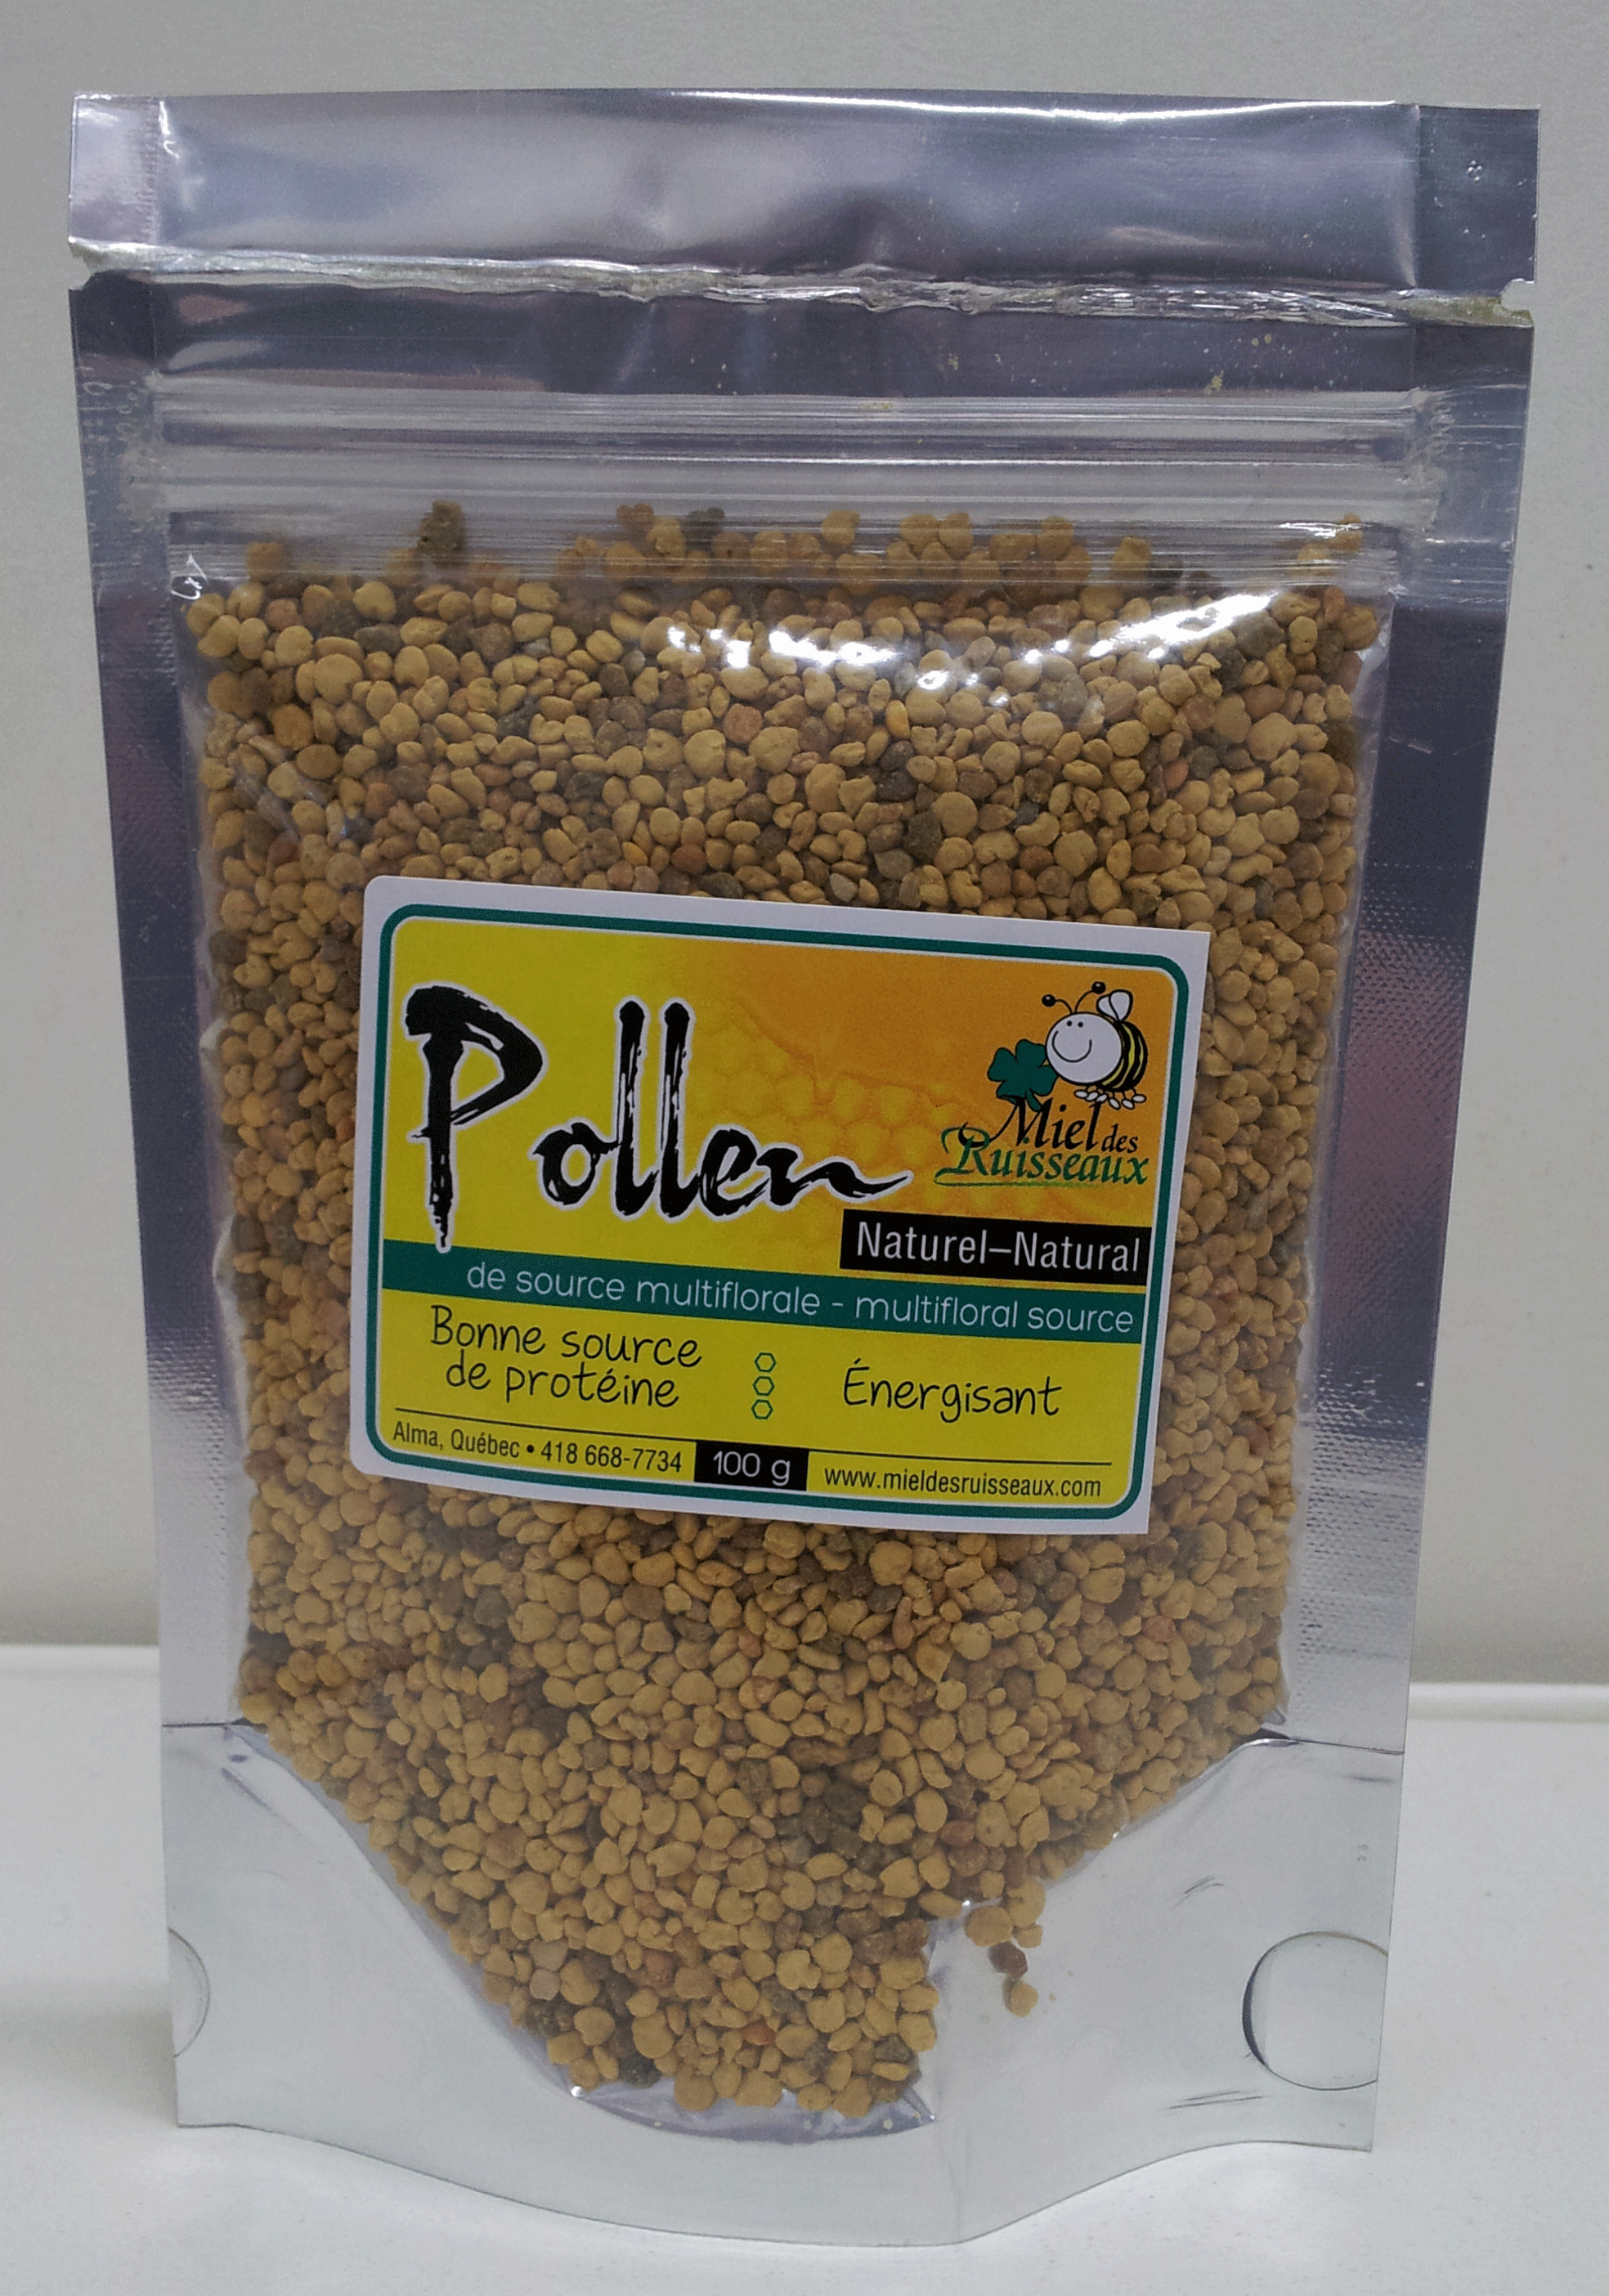 Pollen 100g